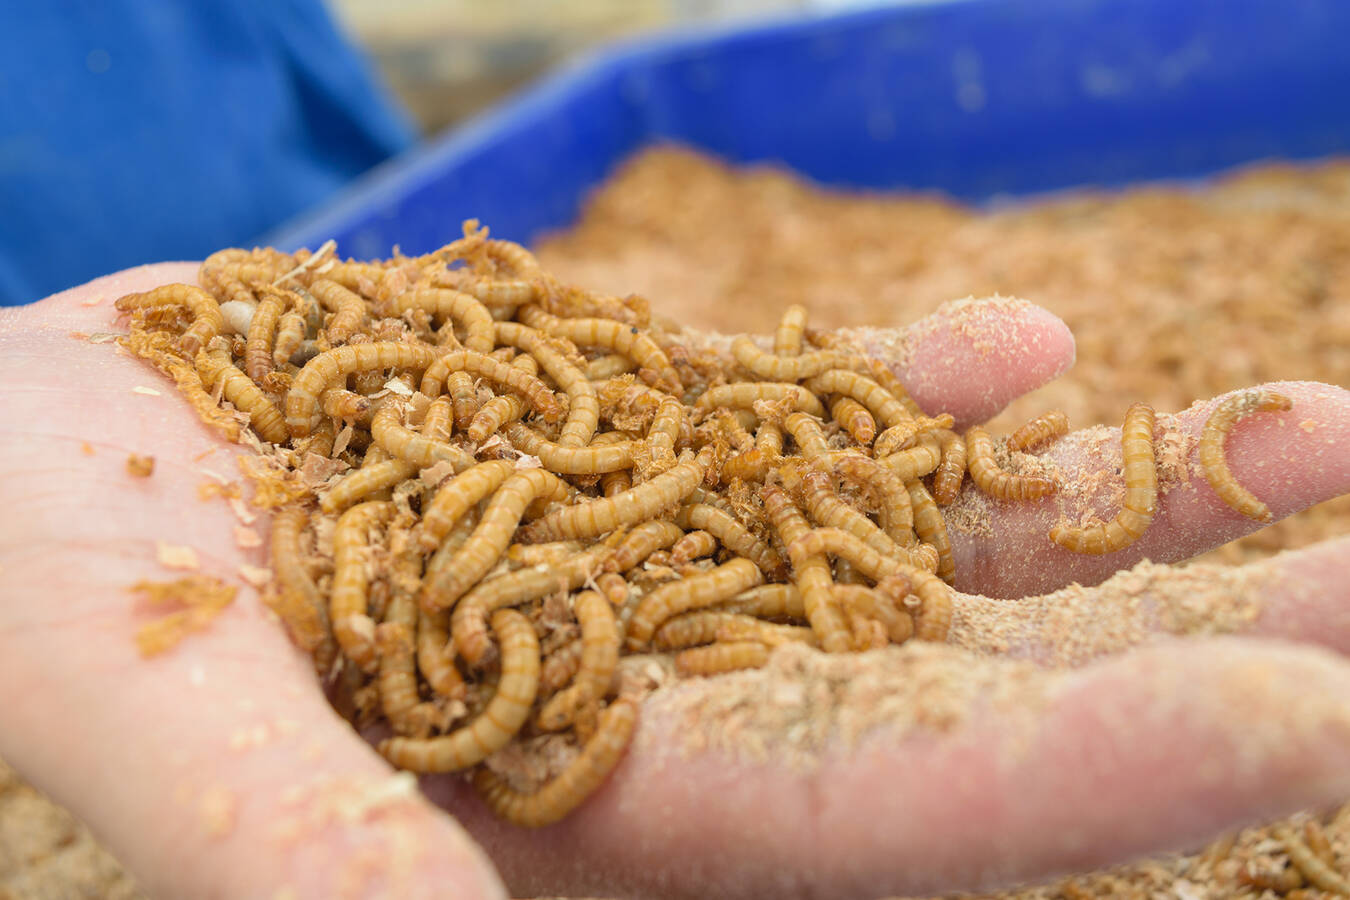 Klein aber fein: Mehlwürmer bei RHEWUM ganz groß In Zusammenarbeit mit Biologen hat RHEWUM eine neue Siebmaschine für die Klassifizierung von Mehlwürmern entwickelt. Der tierfreundliche Siebprozess birgt dabei spezielle technische Herausforderungen.